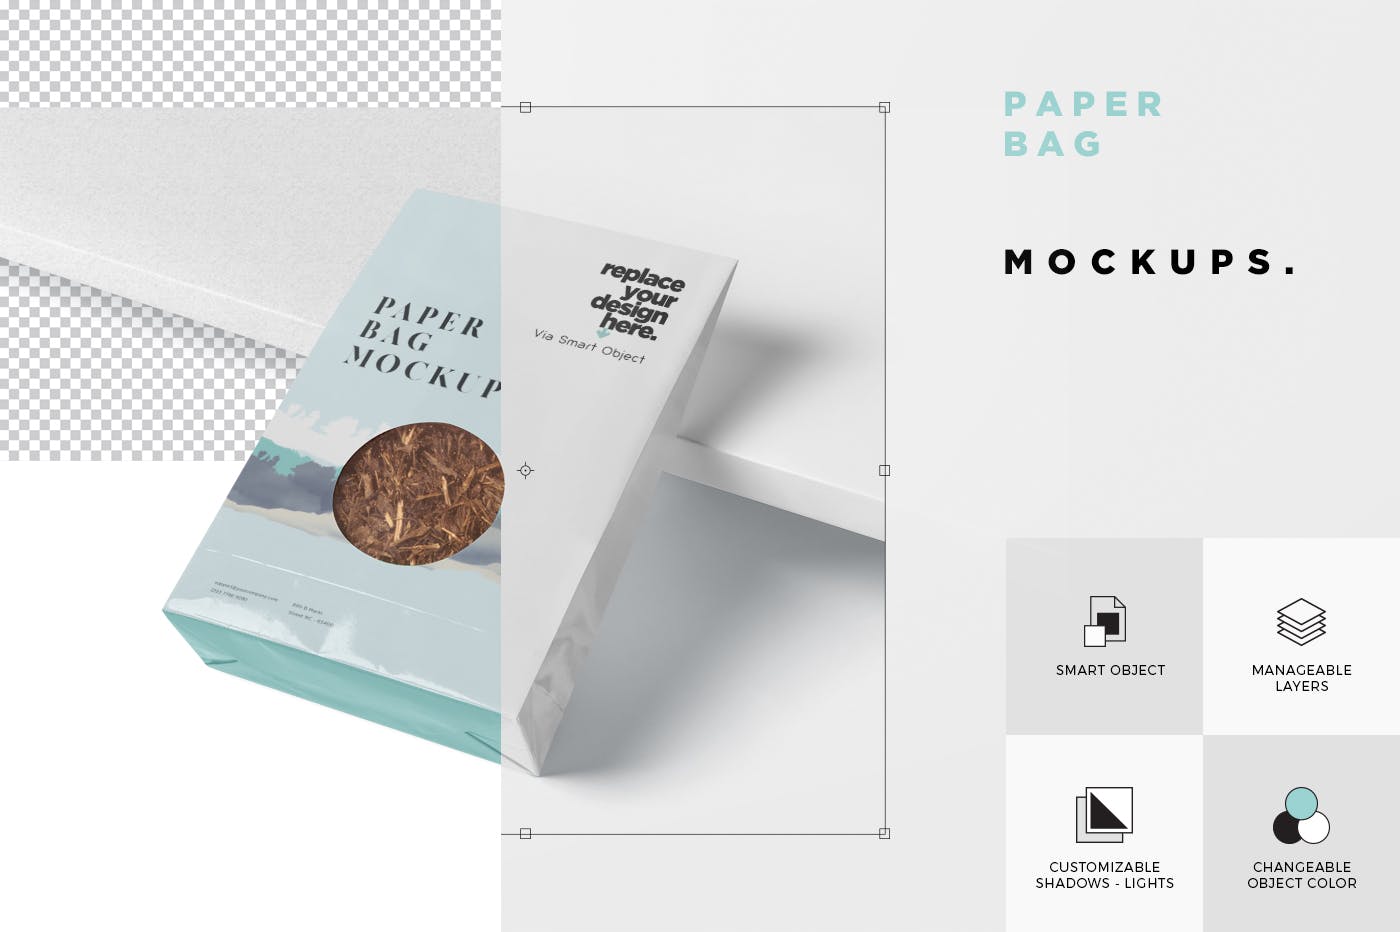 购物纸袋专卖店购物袋外观设计样机 Paper Bag Mockup插图(5)